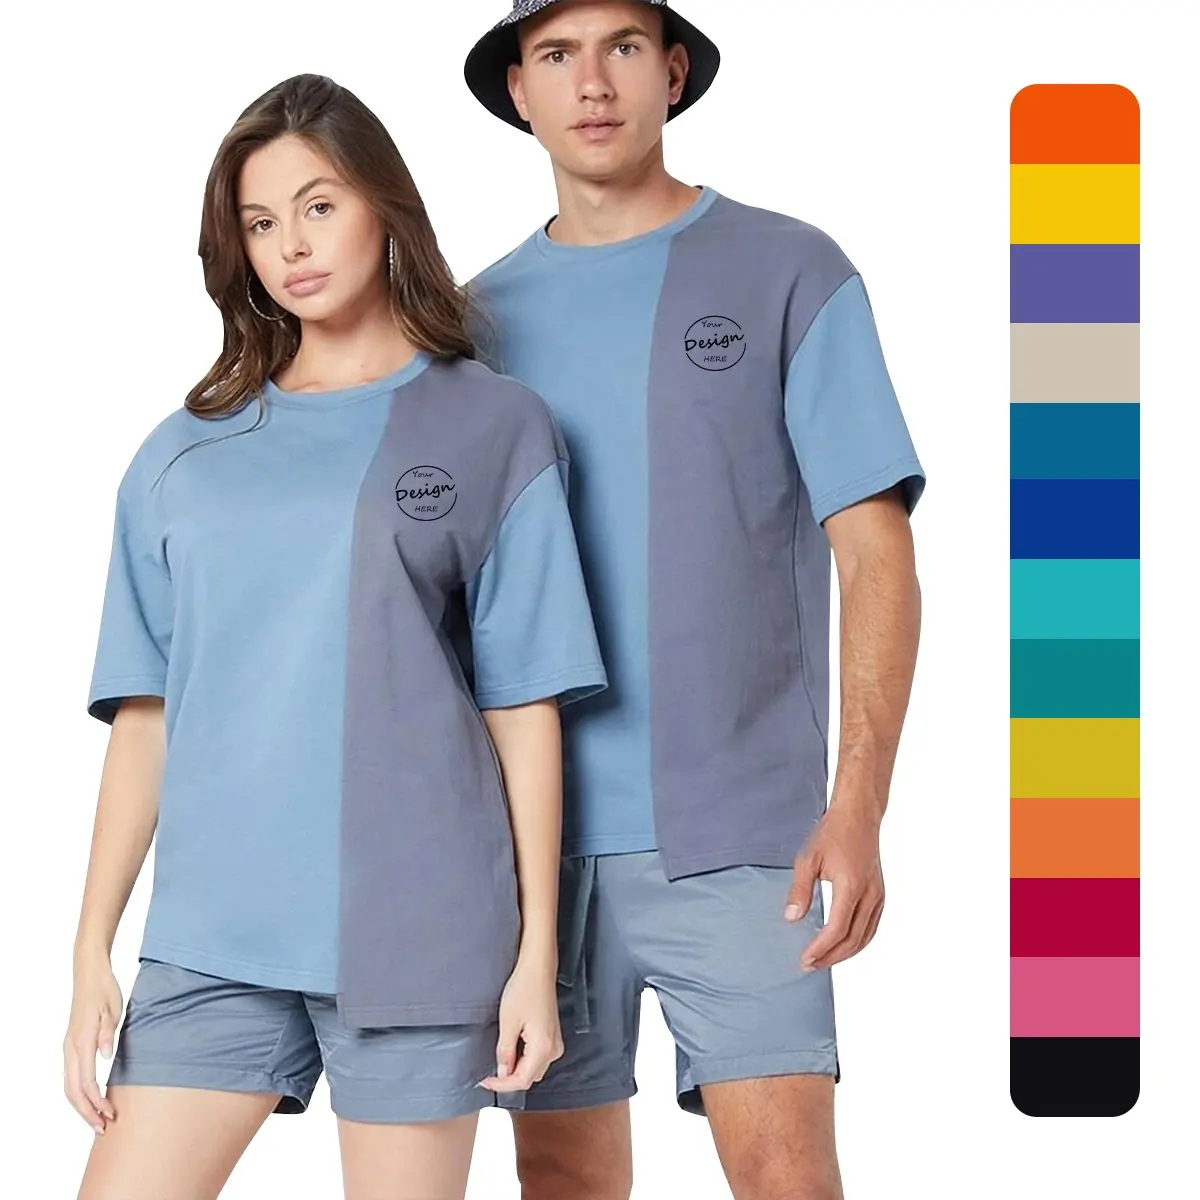 JL0607B maglietta bicolore moda uomo di alta qualità maglietta uomo Color Block maglietta alla moda maglietta oversize Unisex